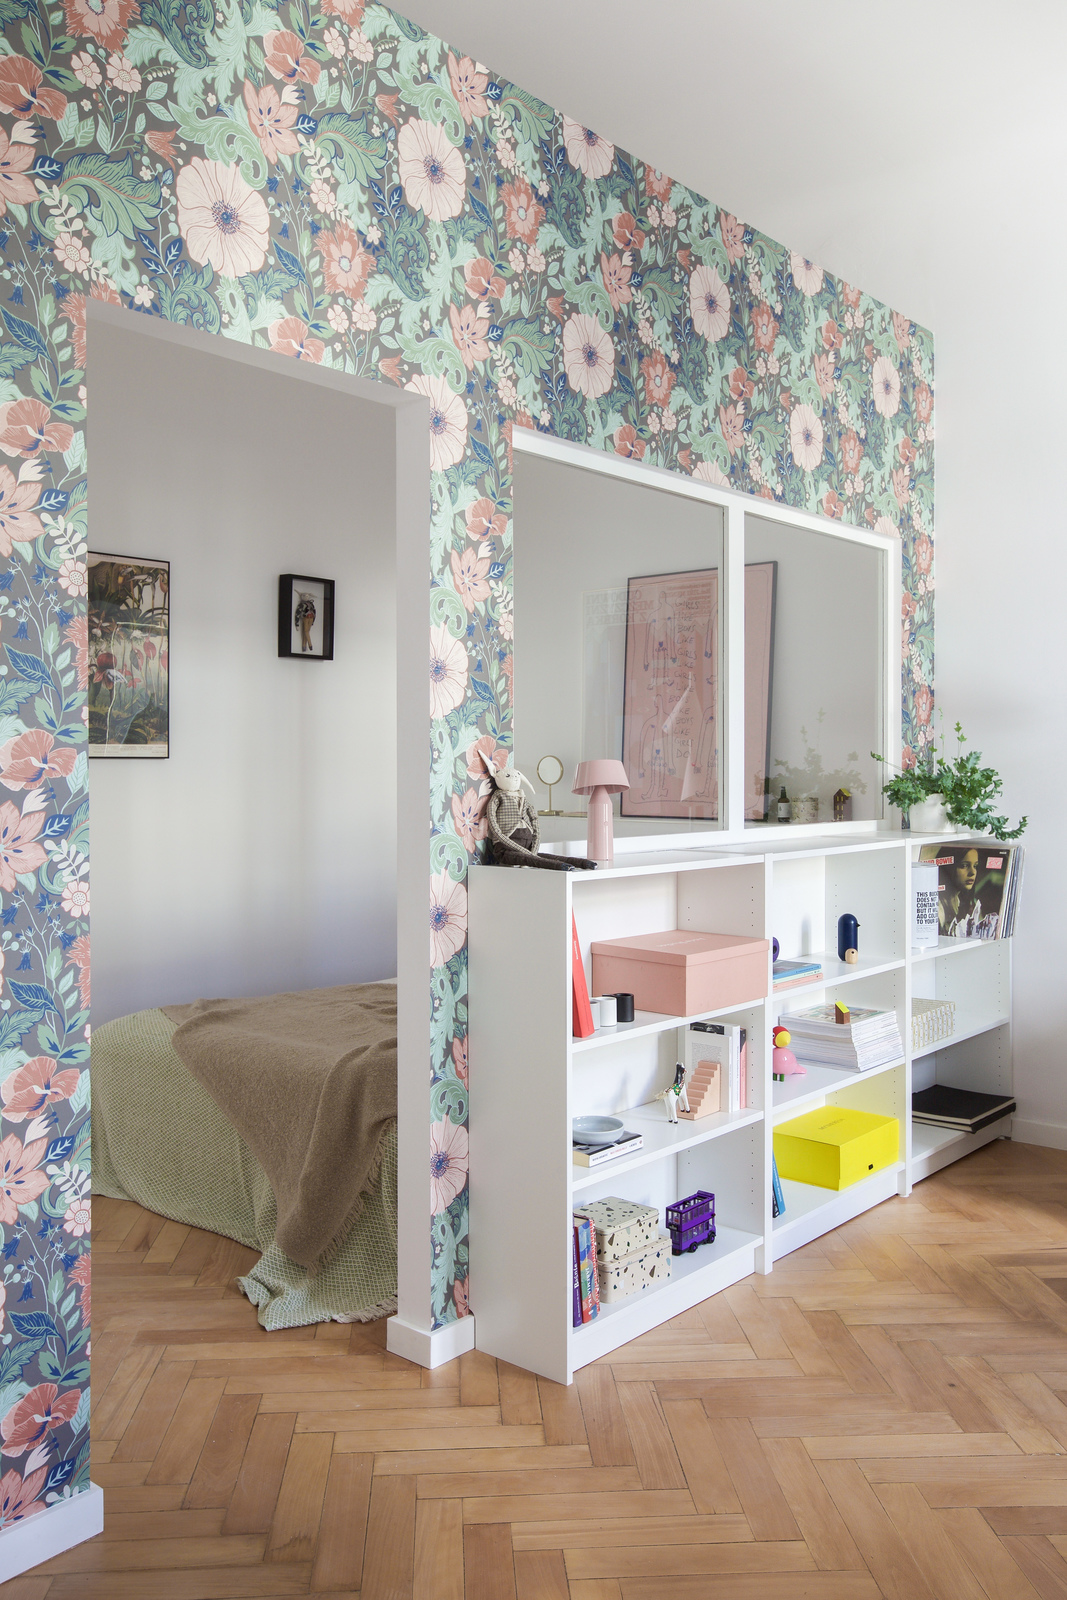 Góc phải phòng khách là không gian dành cho kệ lưu trữ gọn gàng và phòng ngủ xinh xắn được tô điểm bằng giấy dán tường. Và dĩ nhiên, vẫn là hình ảnh của những bông hoa đang khoe sắc trên nền là những tán lá xanh tươi.